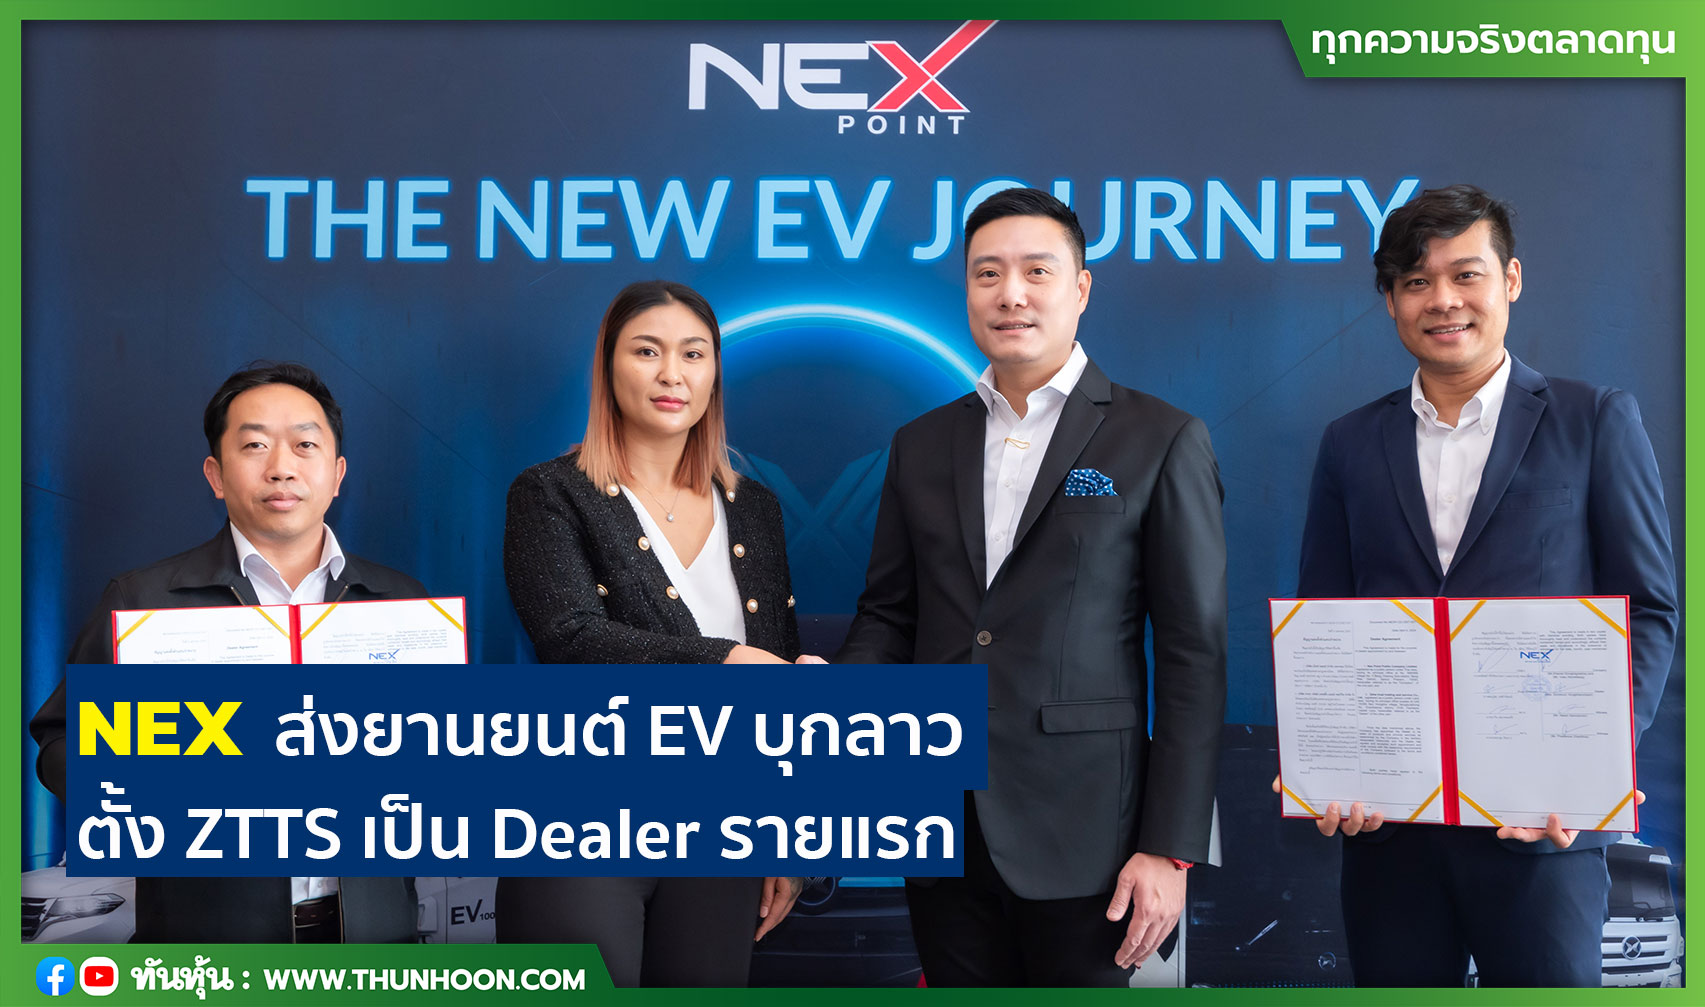 NEX  ส่งยานยนต์ EV บุกลาว ตั้ง ZTTS เป็น Dealer รายแรก หนุนปีนี้โตแรง